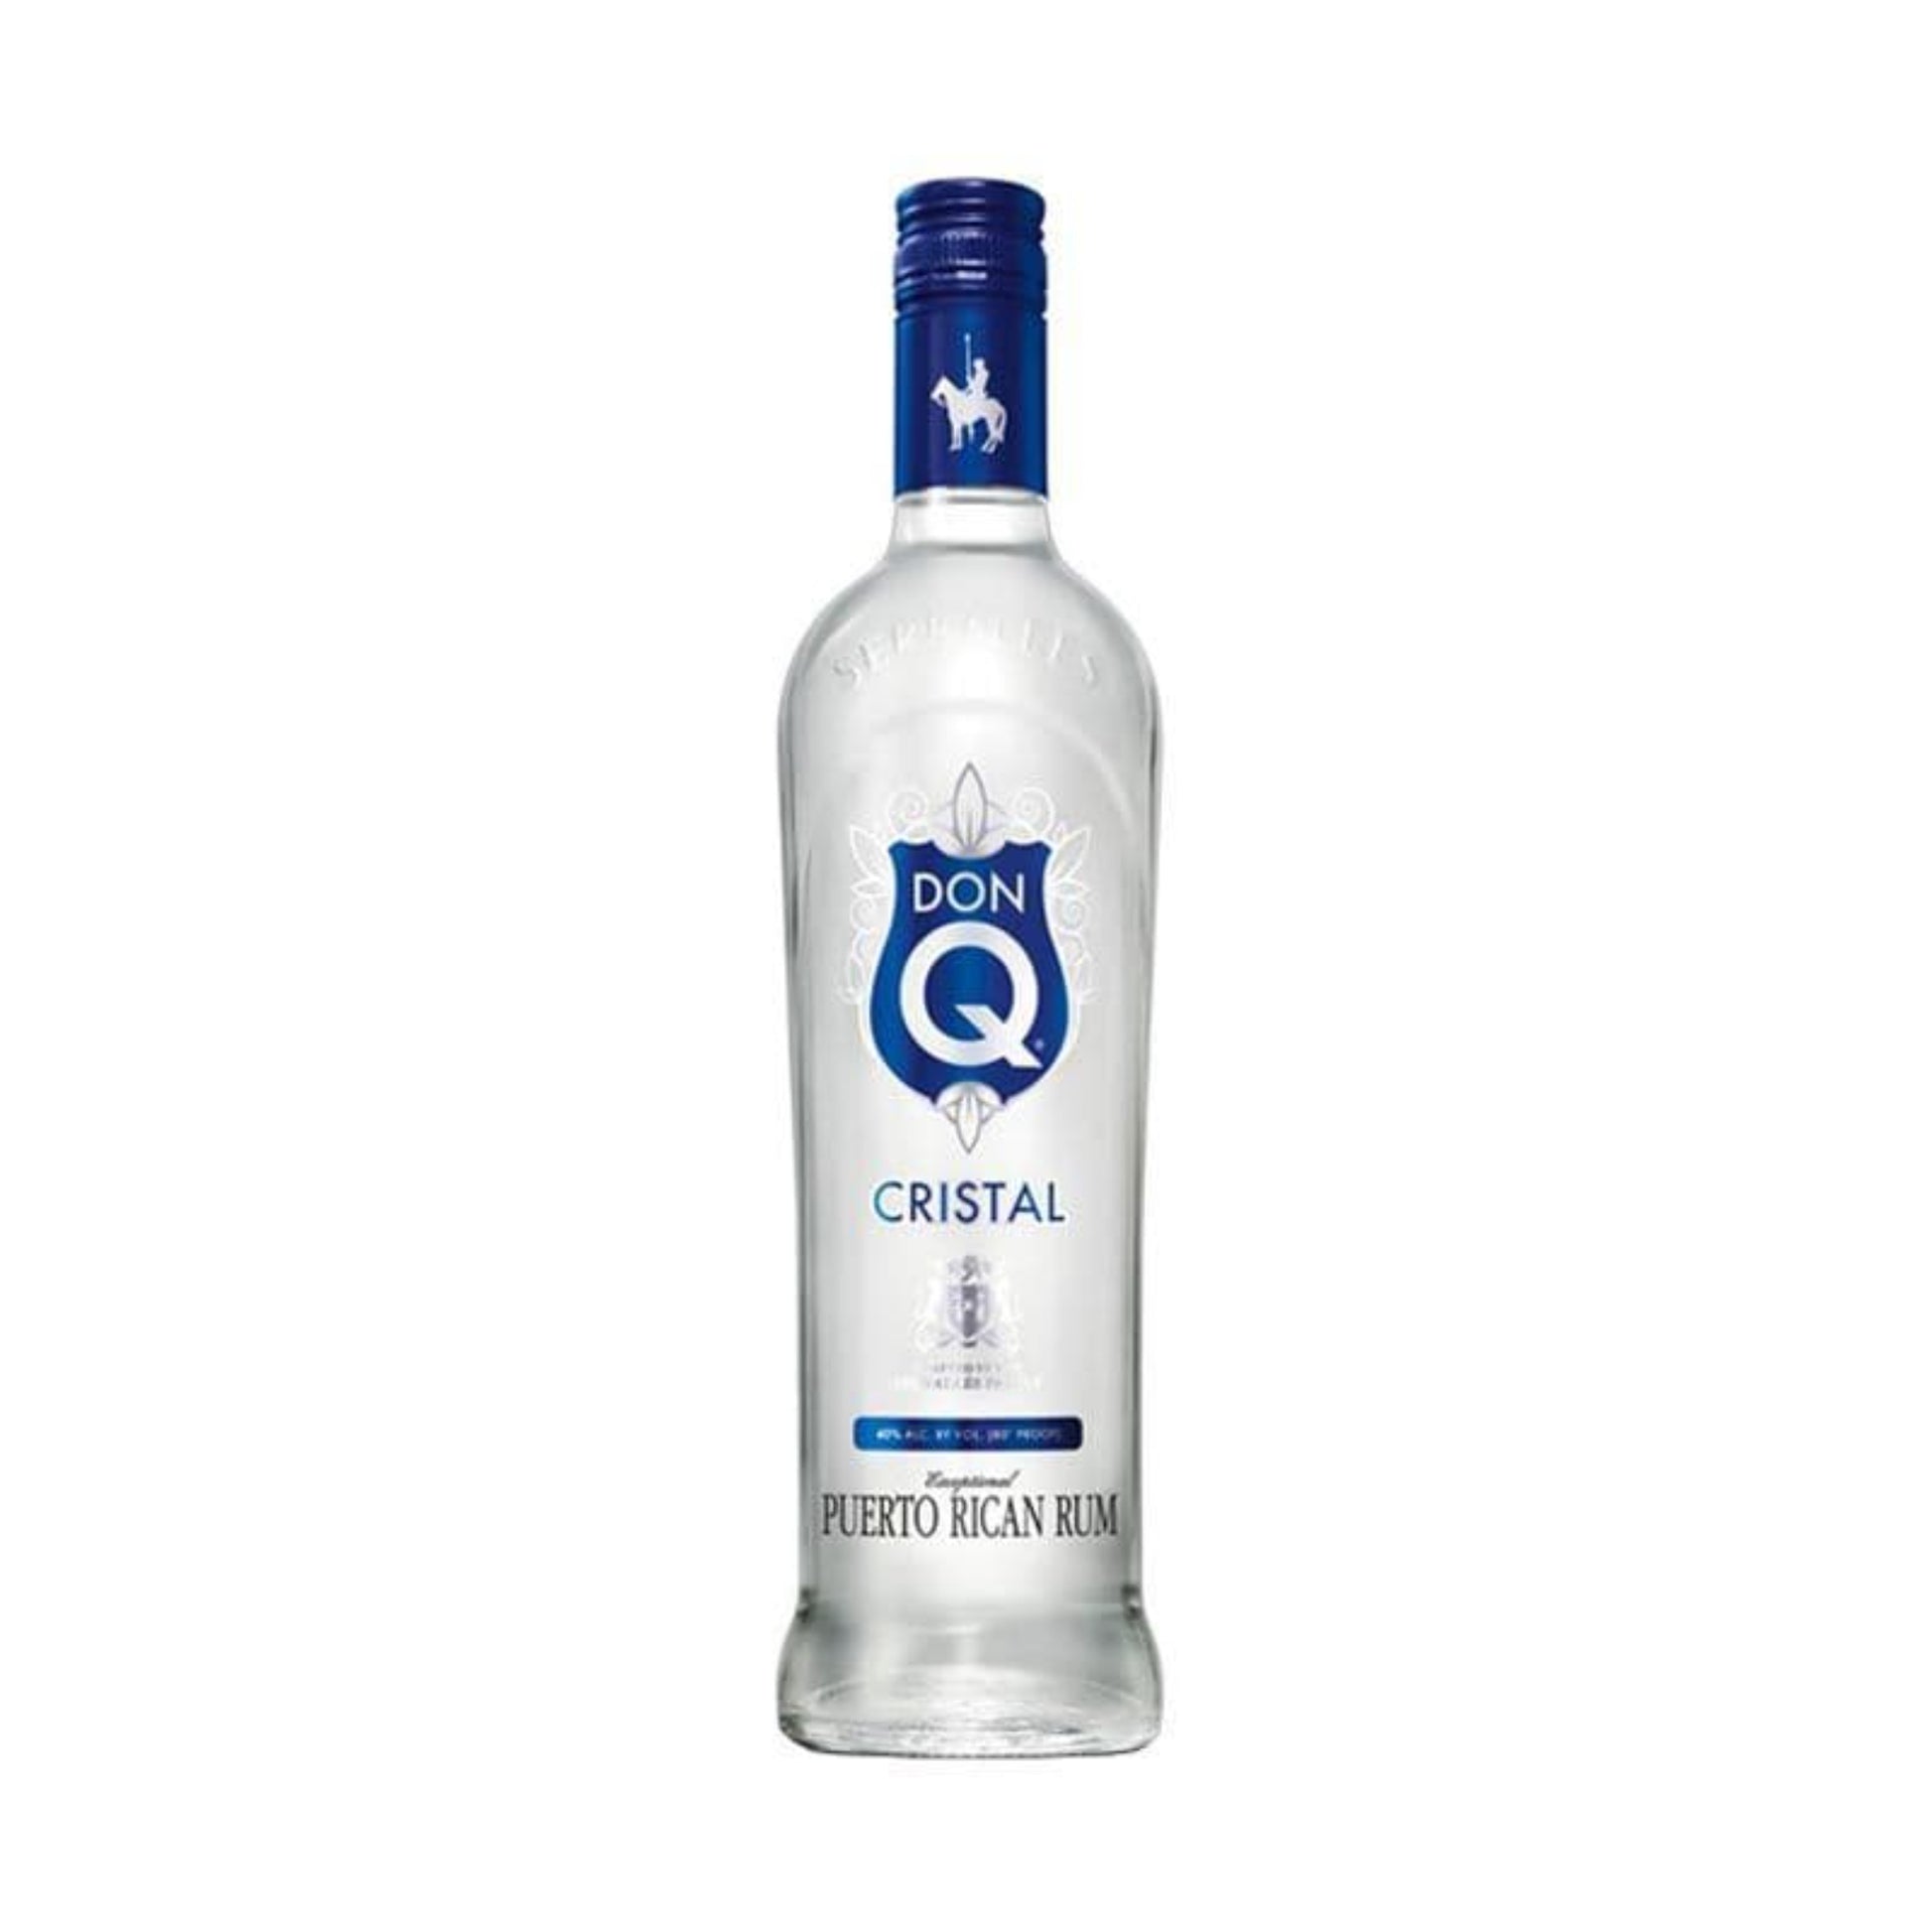 Don Q Cristal Rum - Liquor Geeks